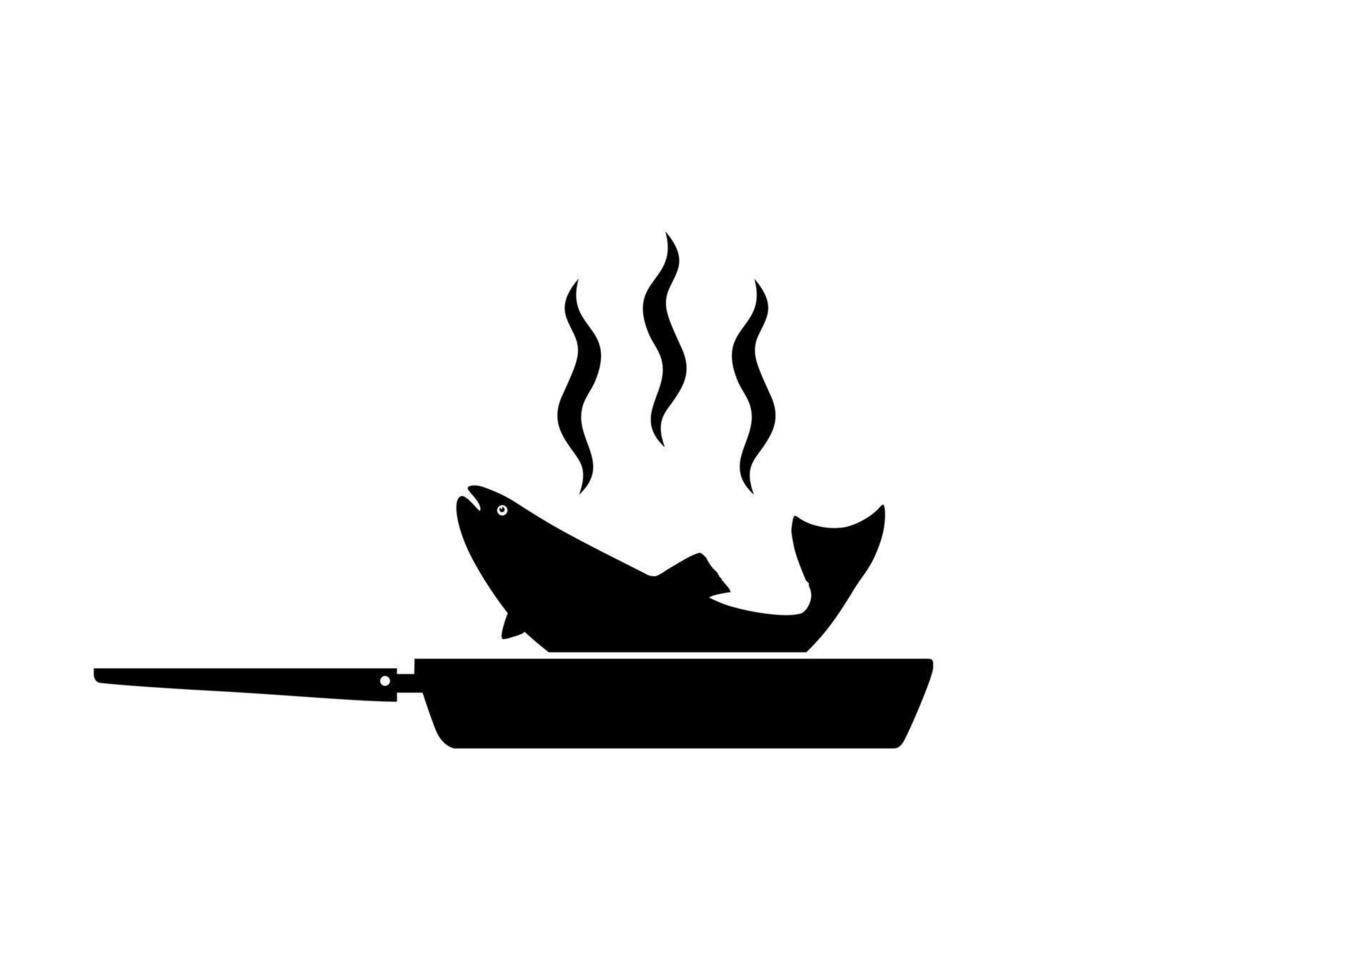 silhouette de la viande de poulet sur la poêle à frire pour le logo, les applications, le site Web, le pictogramme, l'illustration d'art ou l'élément de conception graphique. illustration vectorielle vecteur